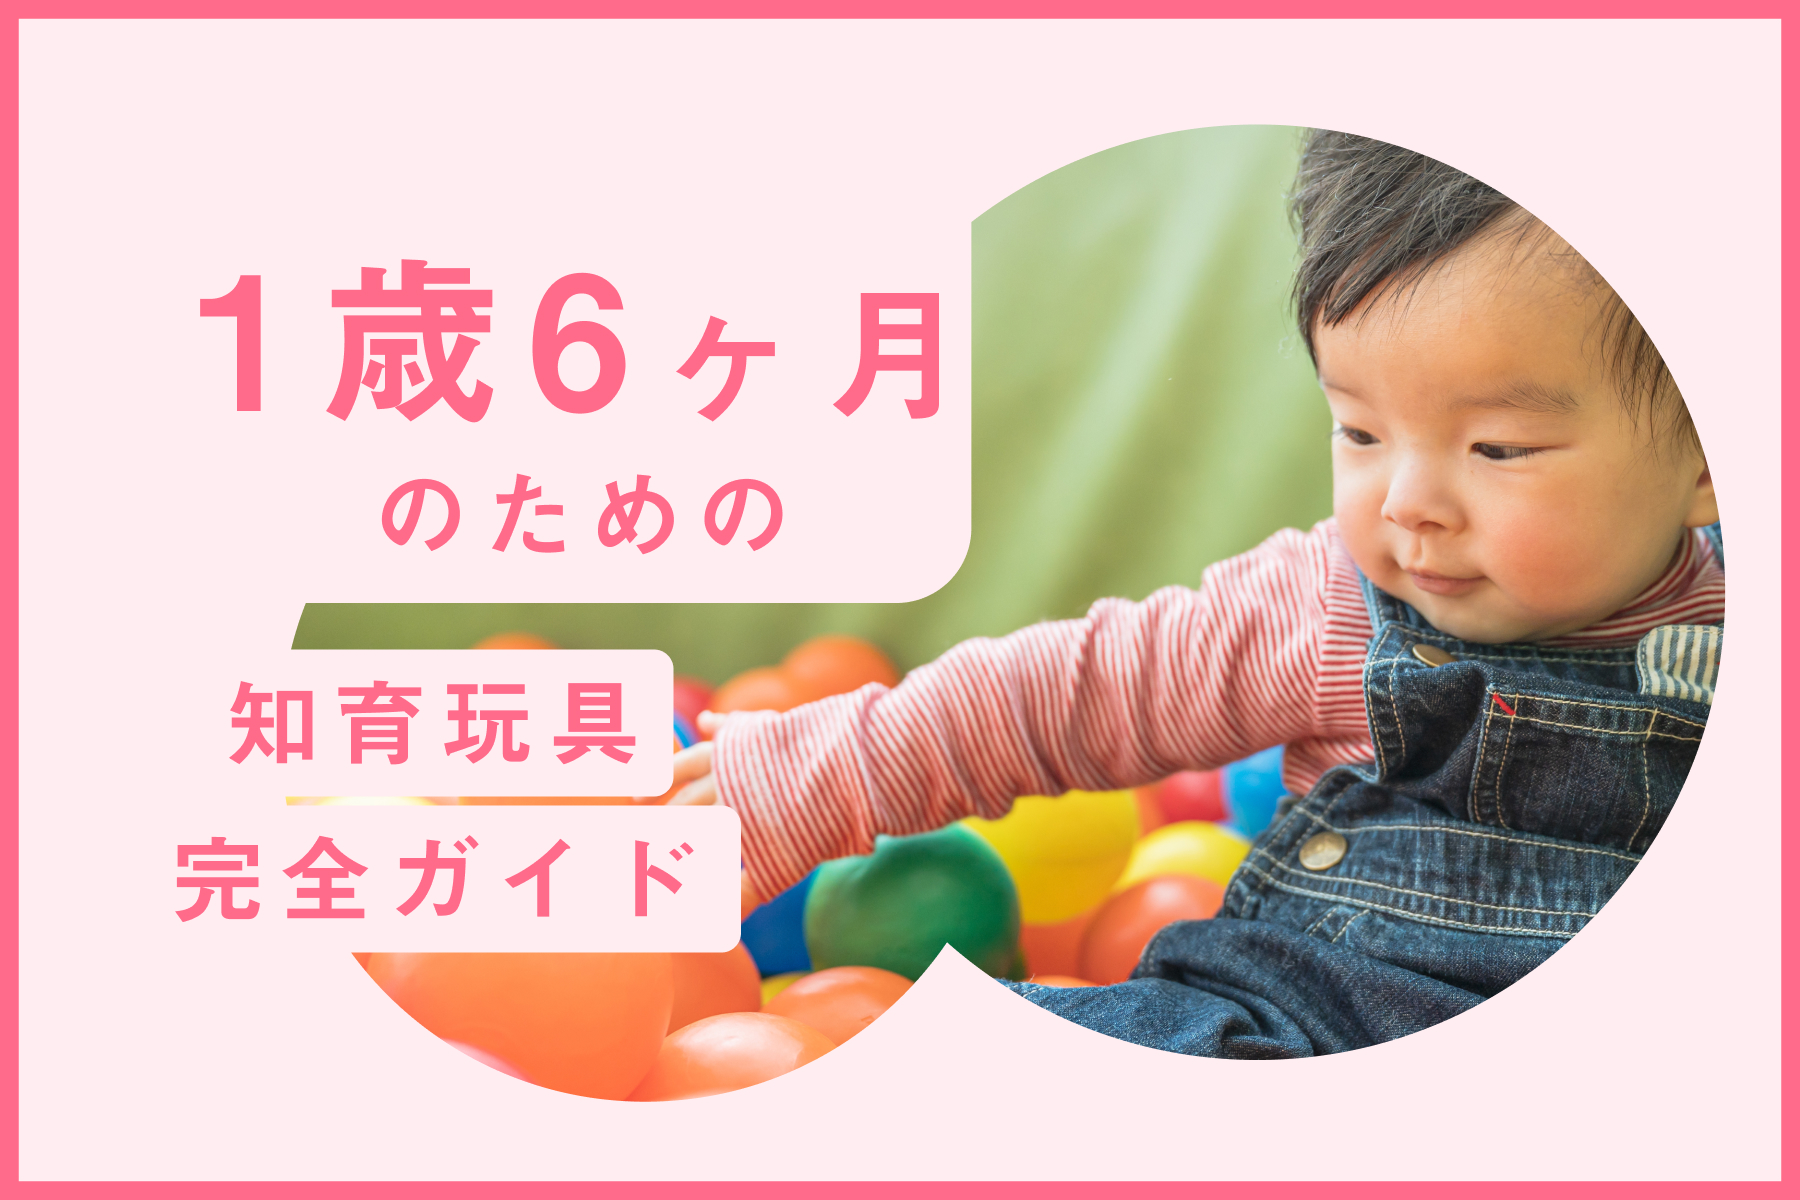 【徹底比較】1歳6ヶ月 向け知育玩具・おもちゃおすすめランキング20選